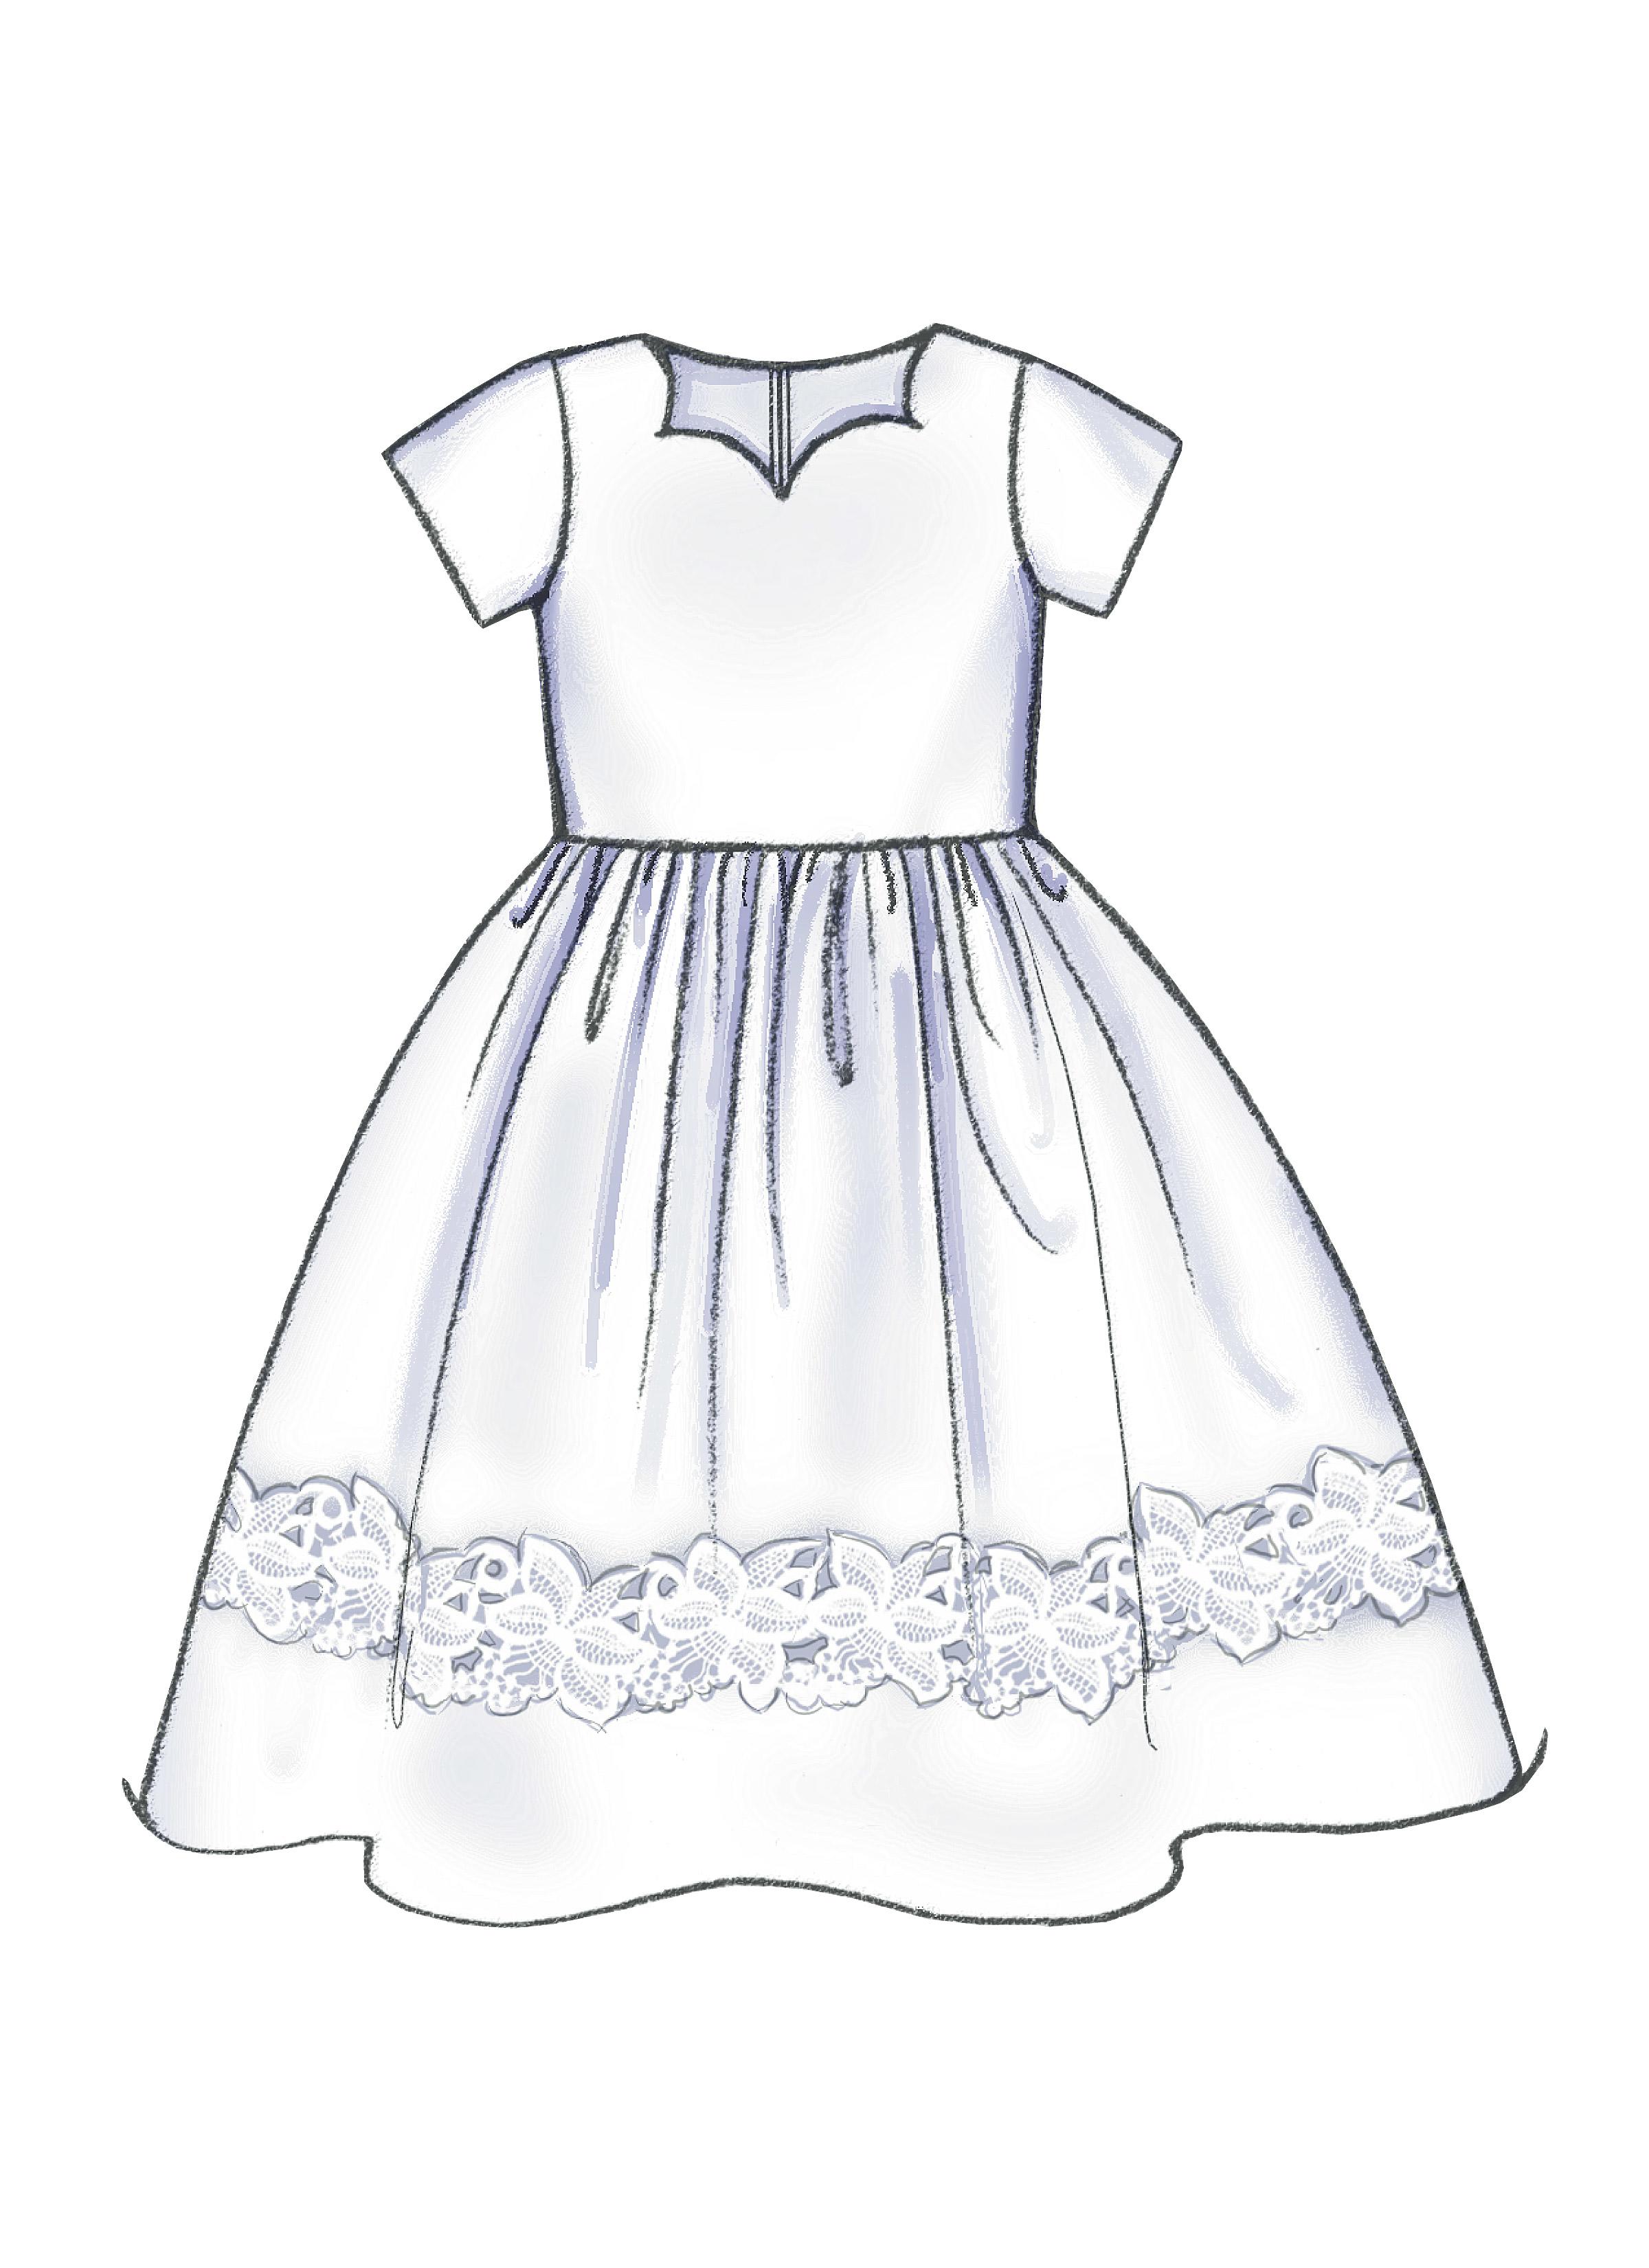 Butterick B3350 Children's/Girls' Dress